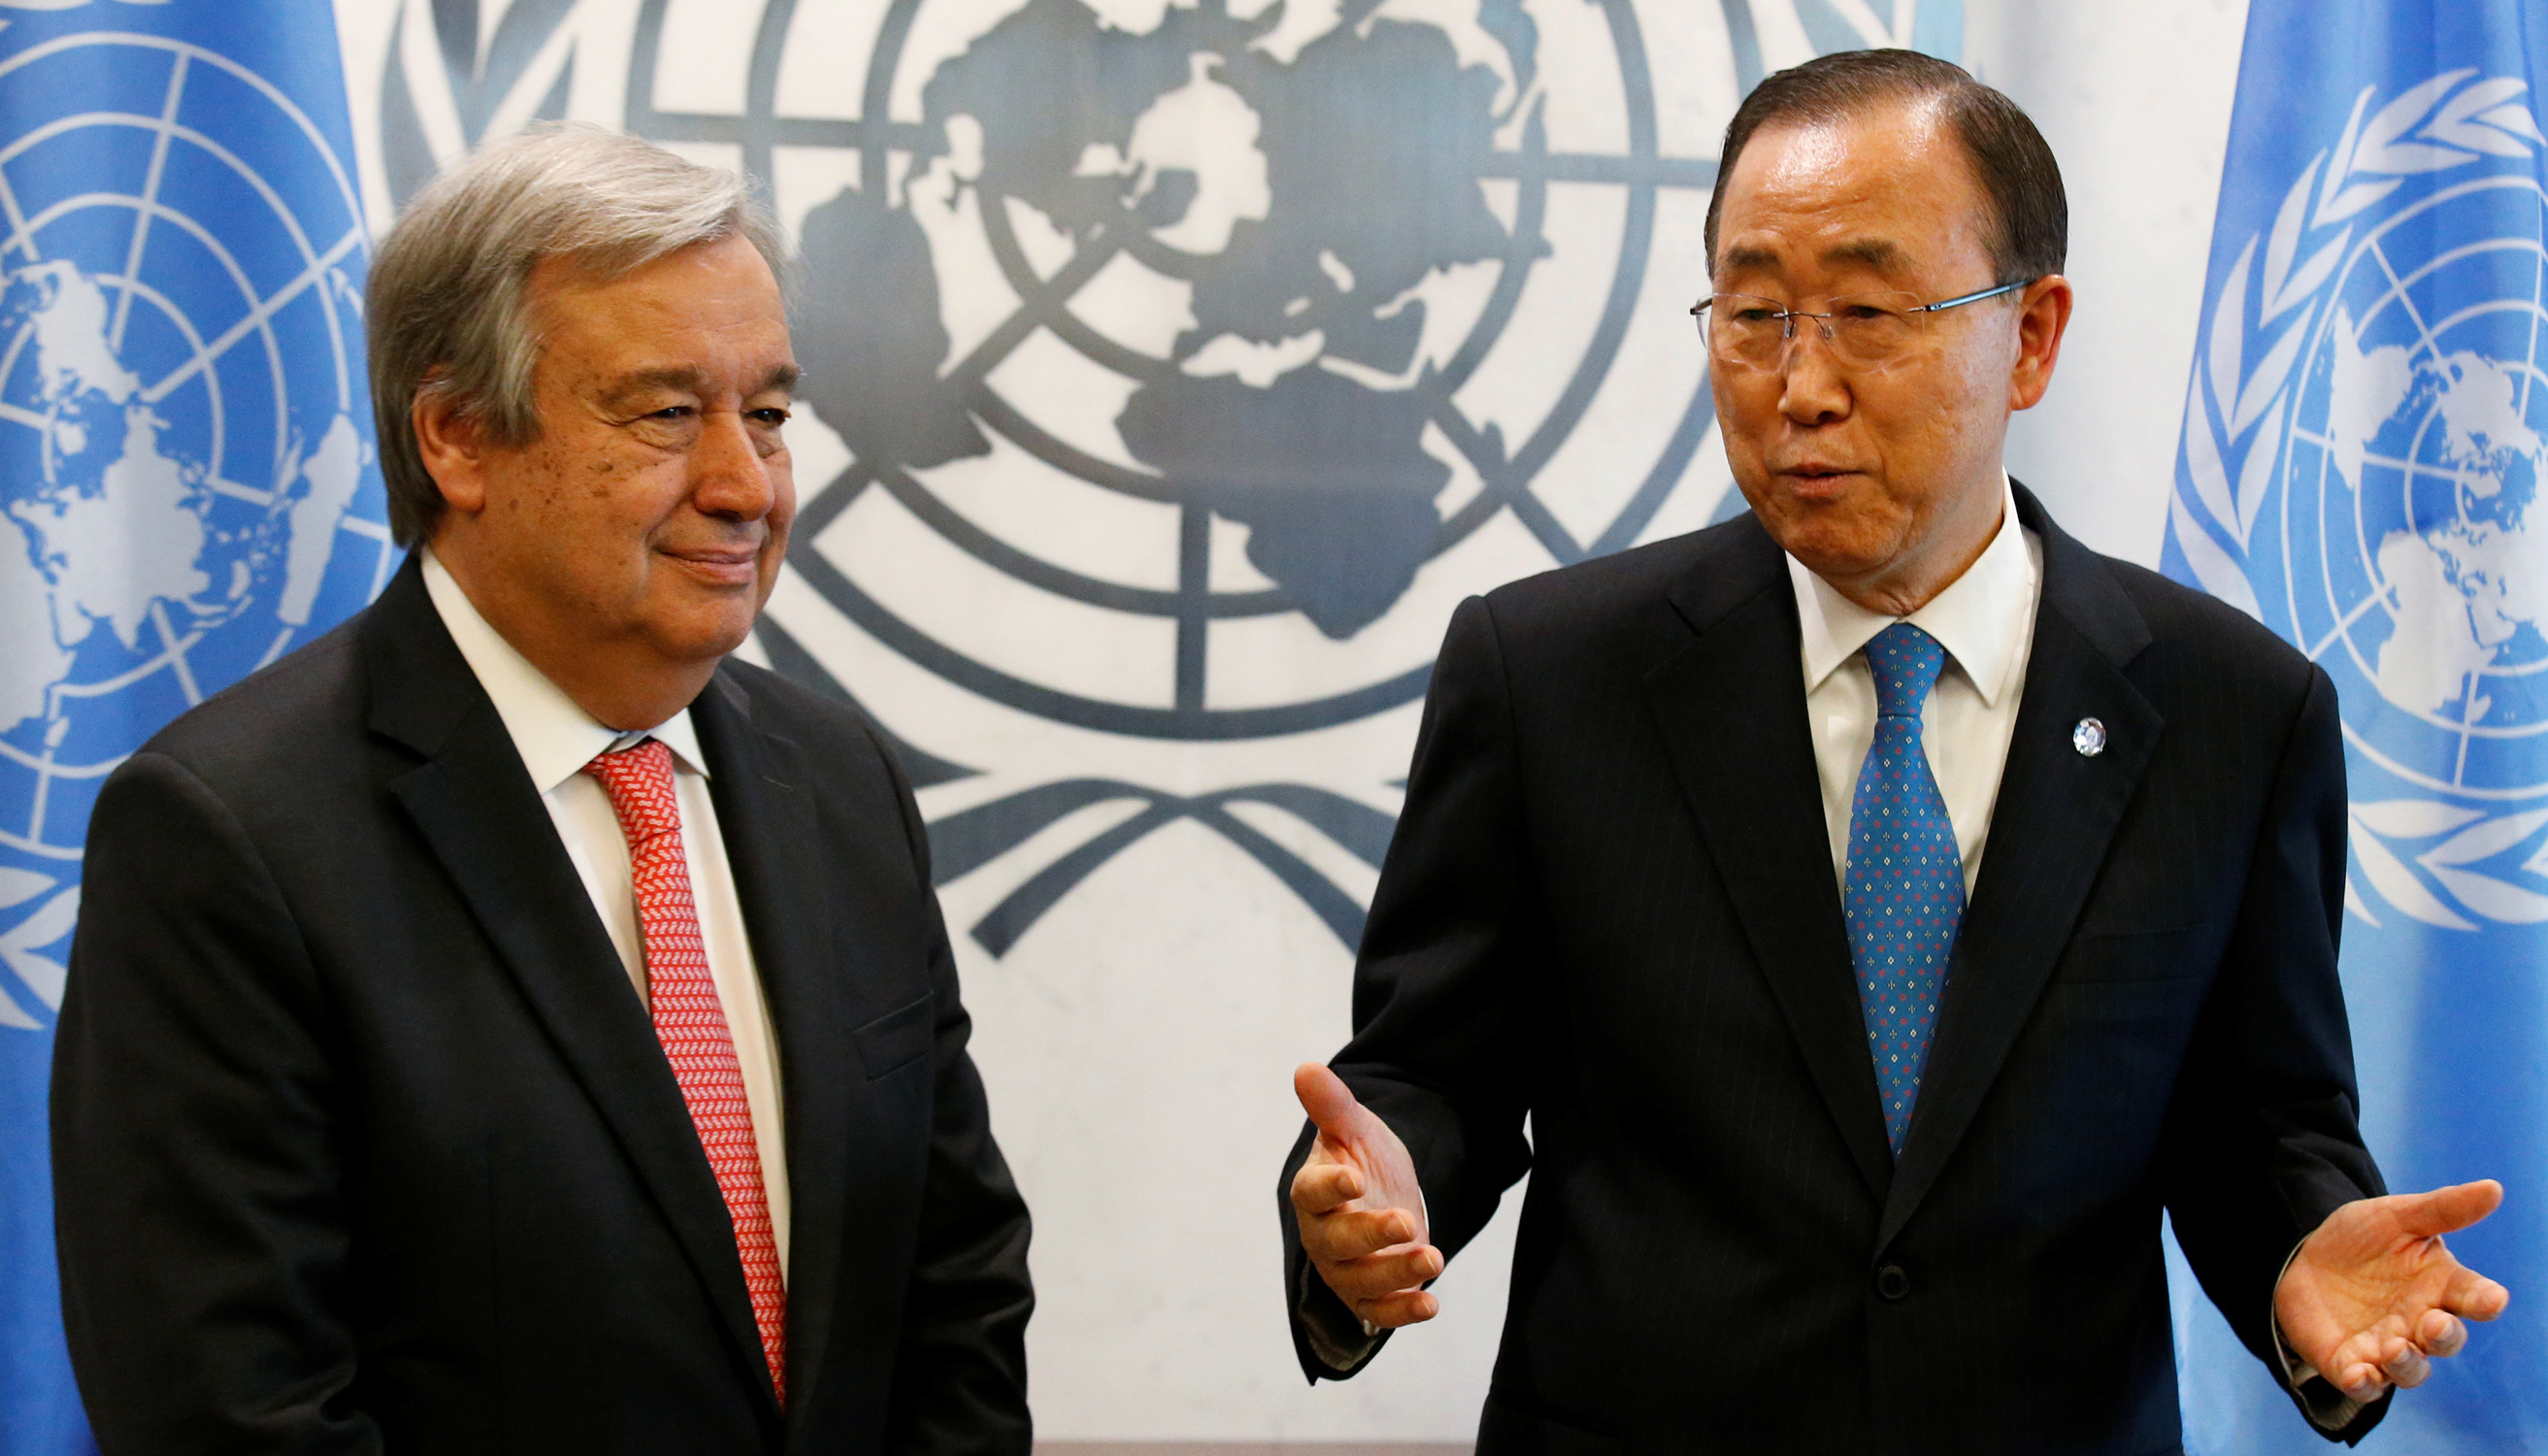 Der designierte Generalsekretär Antonio Guterres aus Portugal und U.N.-Generalsekretär Ban Ki-moon im U.N.-Sitz in New York City